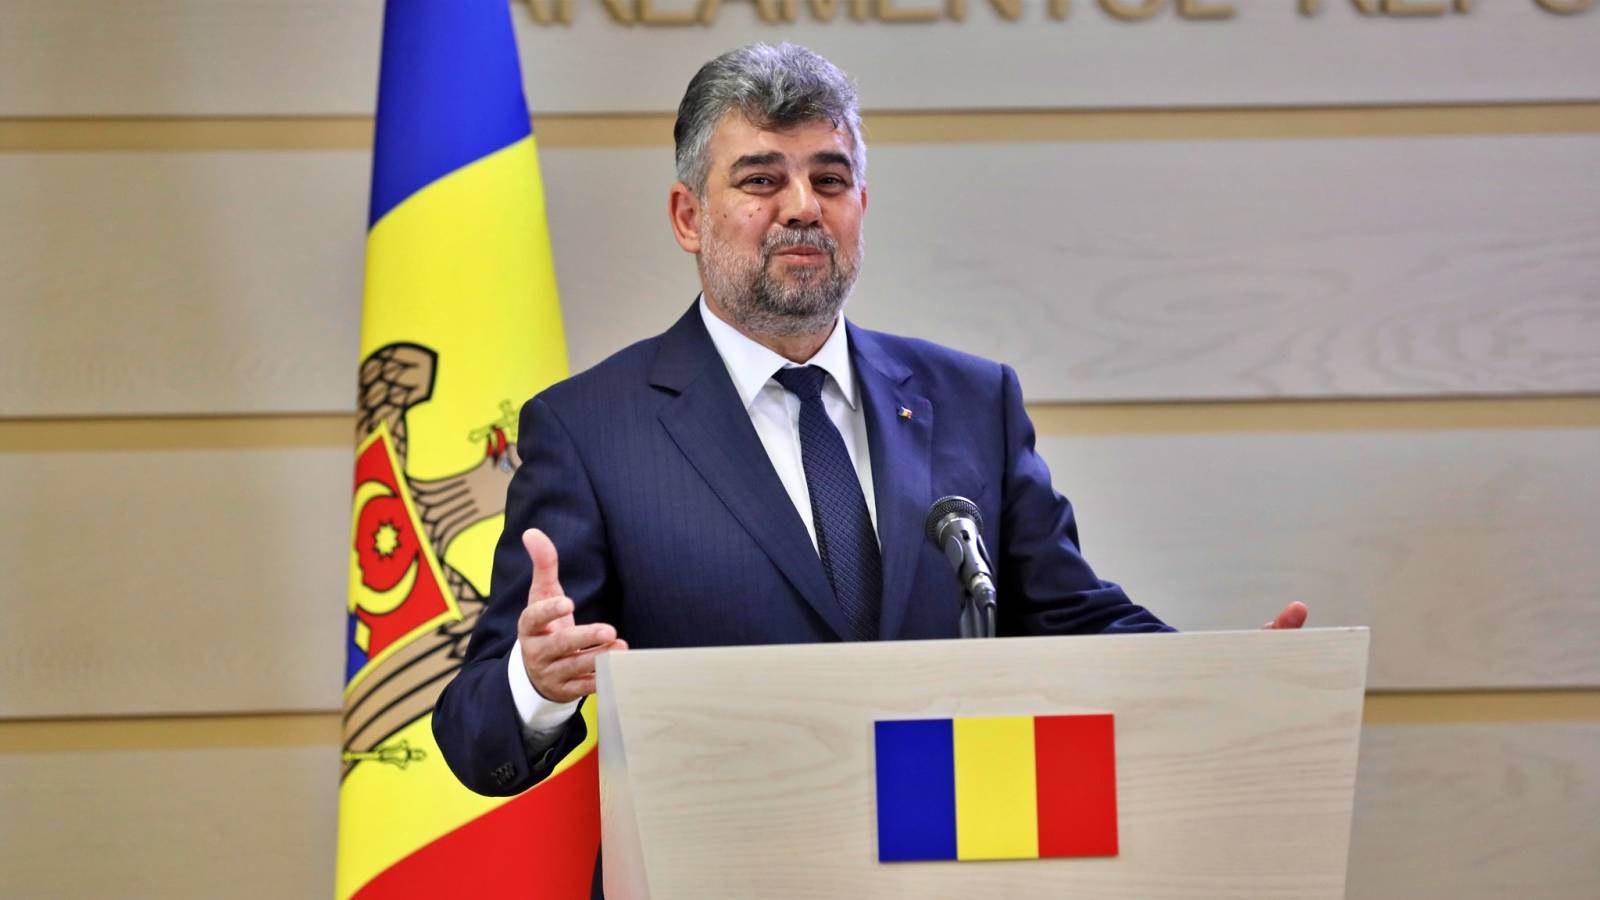 Marcel Ciolacu Oficjalne Ogłoszenia OSTATNI RAZ Rumuni do Prezesa PSD